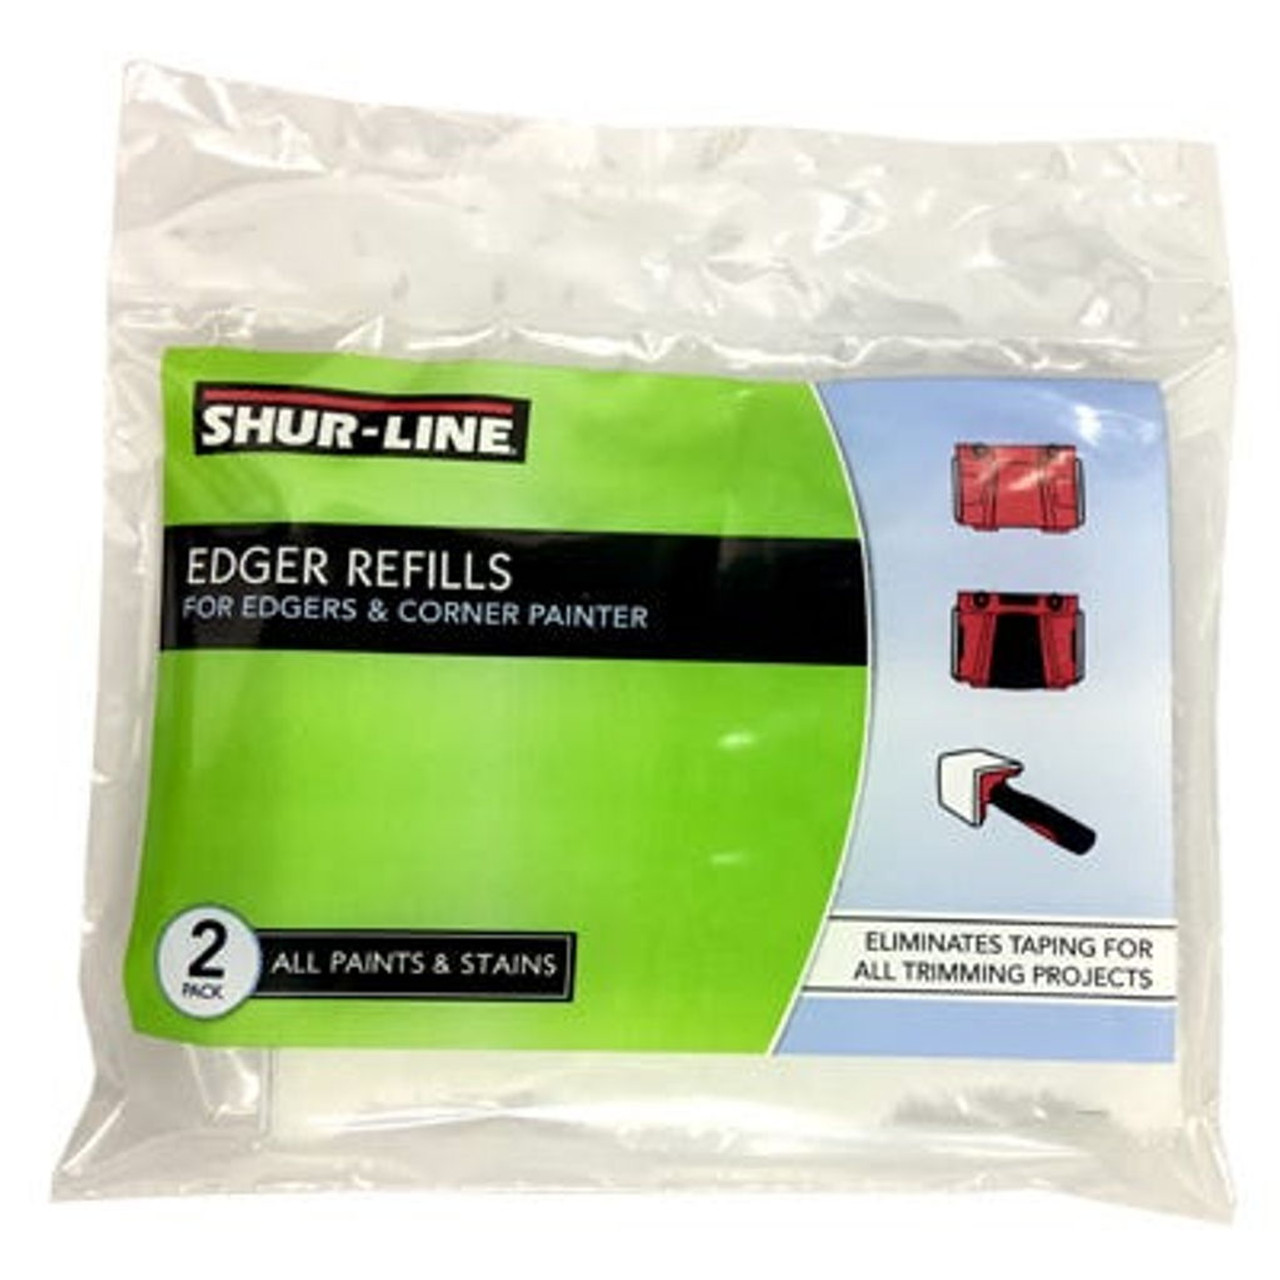 Shur-Line Edger Pro